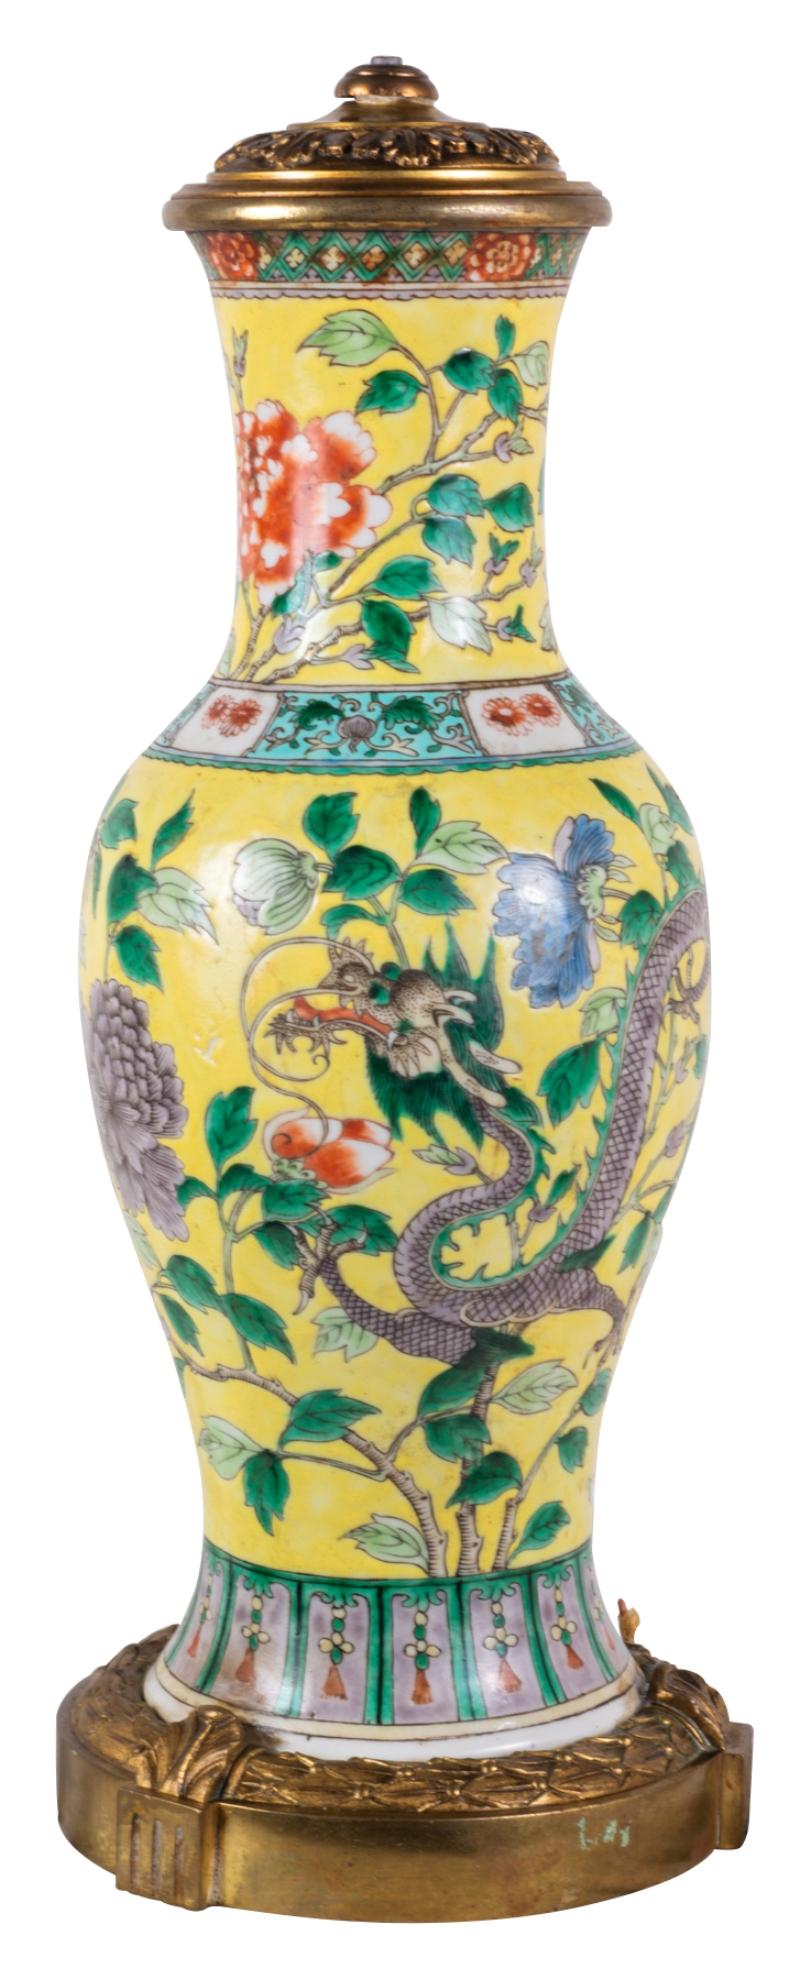 Magnifique vase / lampe chinoise Famille Jaune du 19ème siècle. Un magnifique fond jaune avec des bordures à motifs classiques, une décoration florale exotique entourant un dragon mythique. Monté sur une base classique en bronze doré.